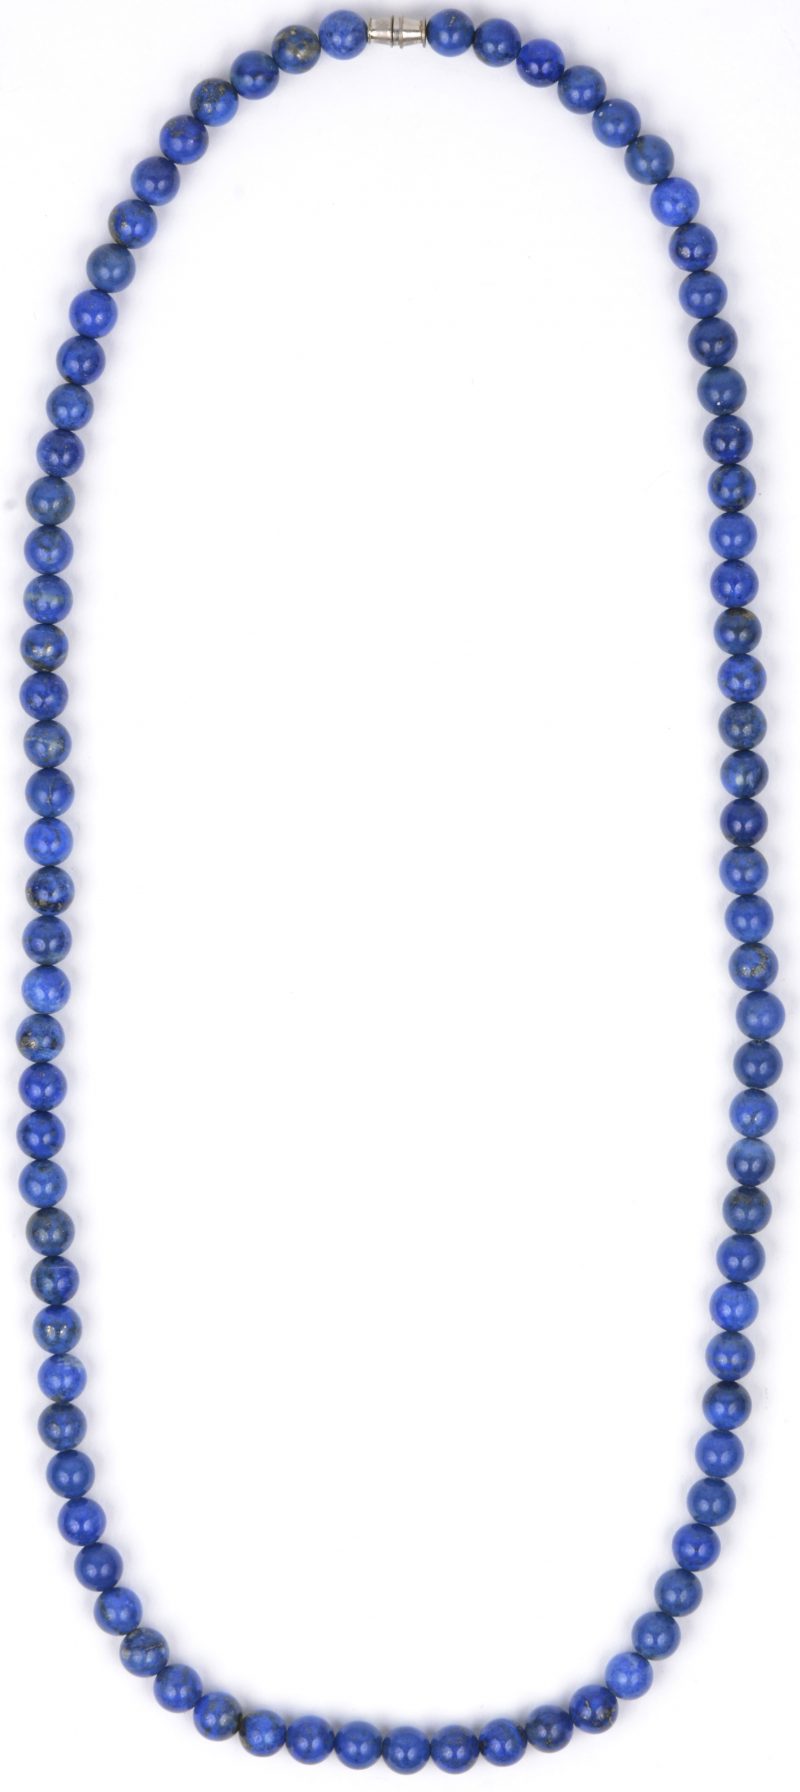 Een parelhalssnoer van lapis lazuli.